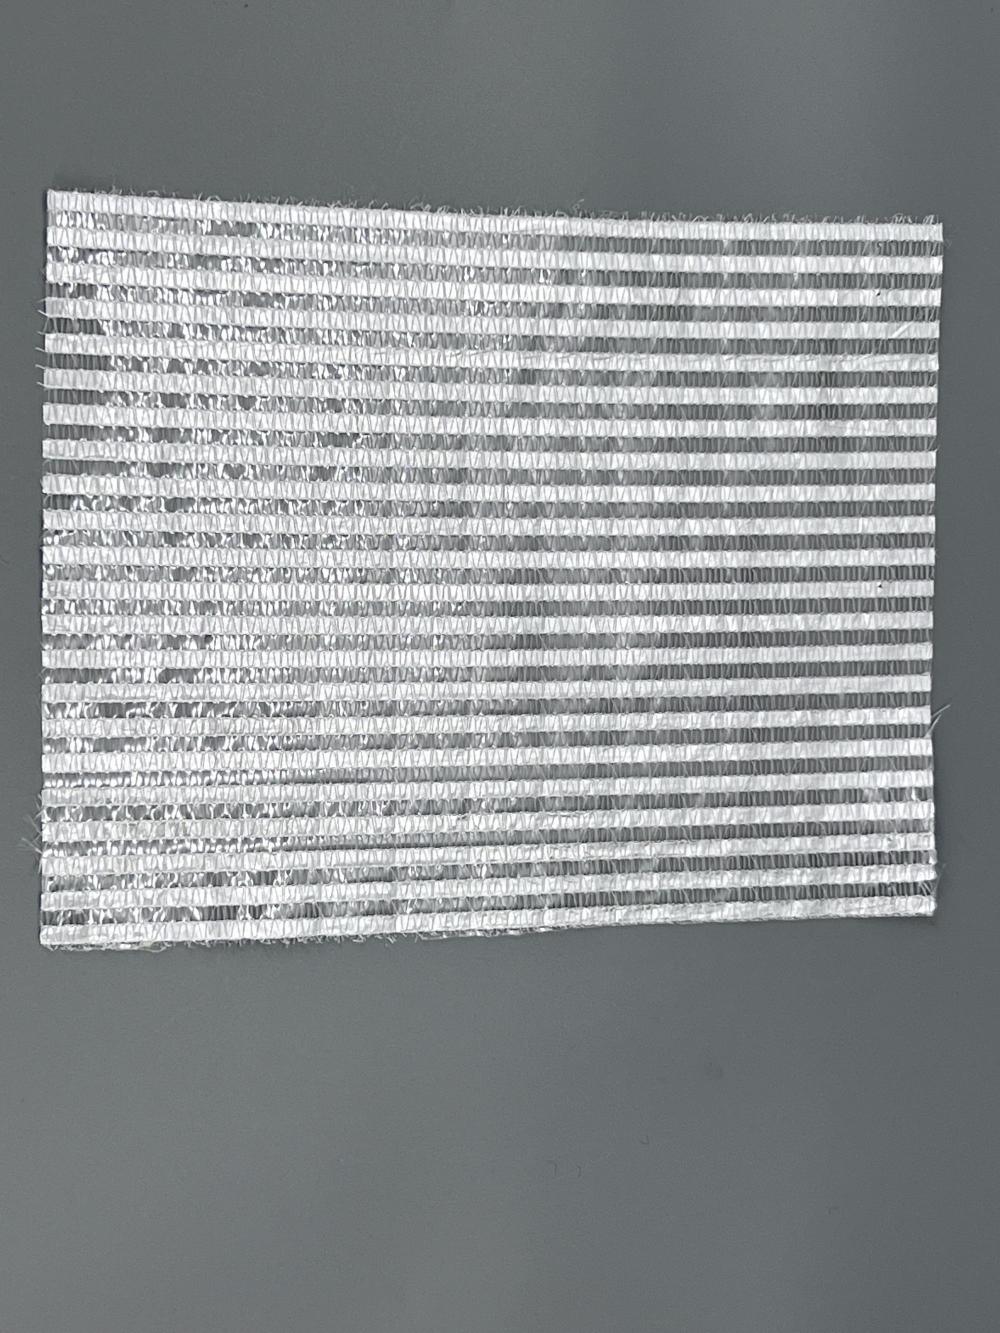 Schermo di tela per tonalità in alluminio in lamiera